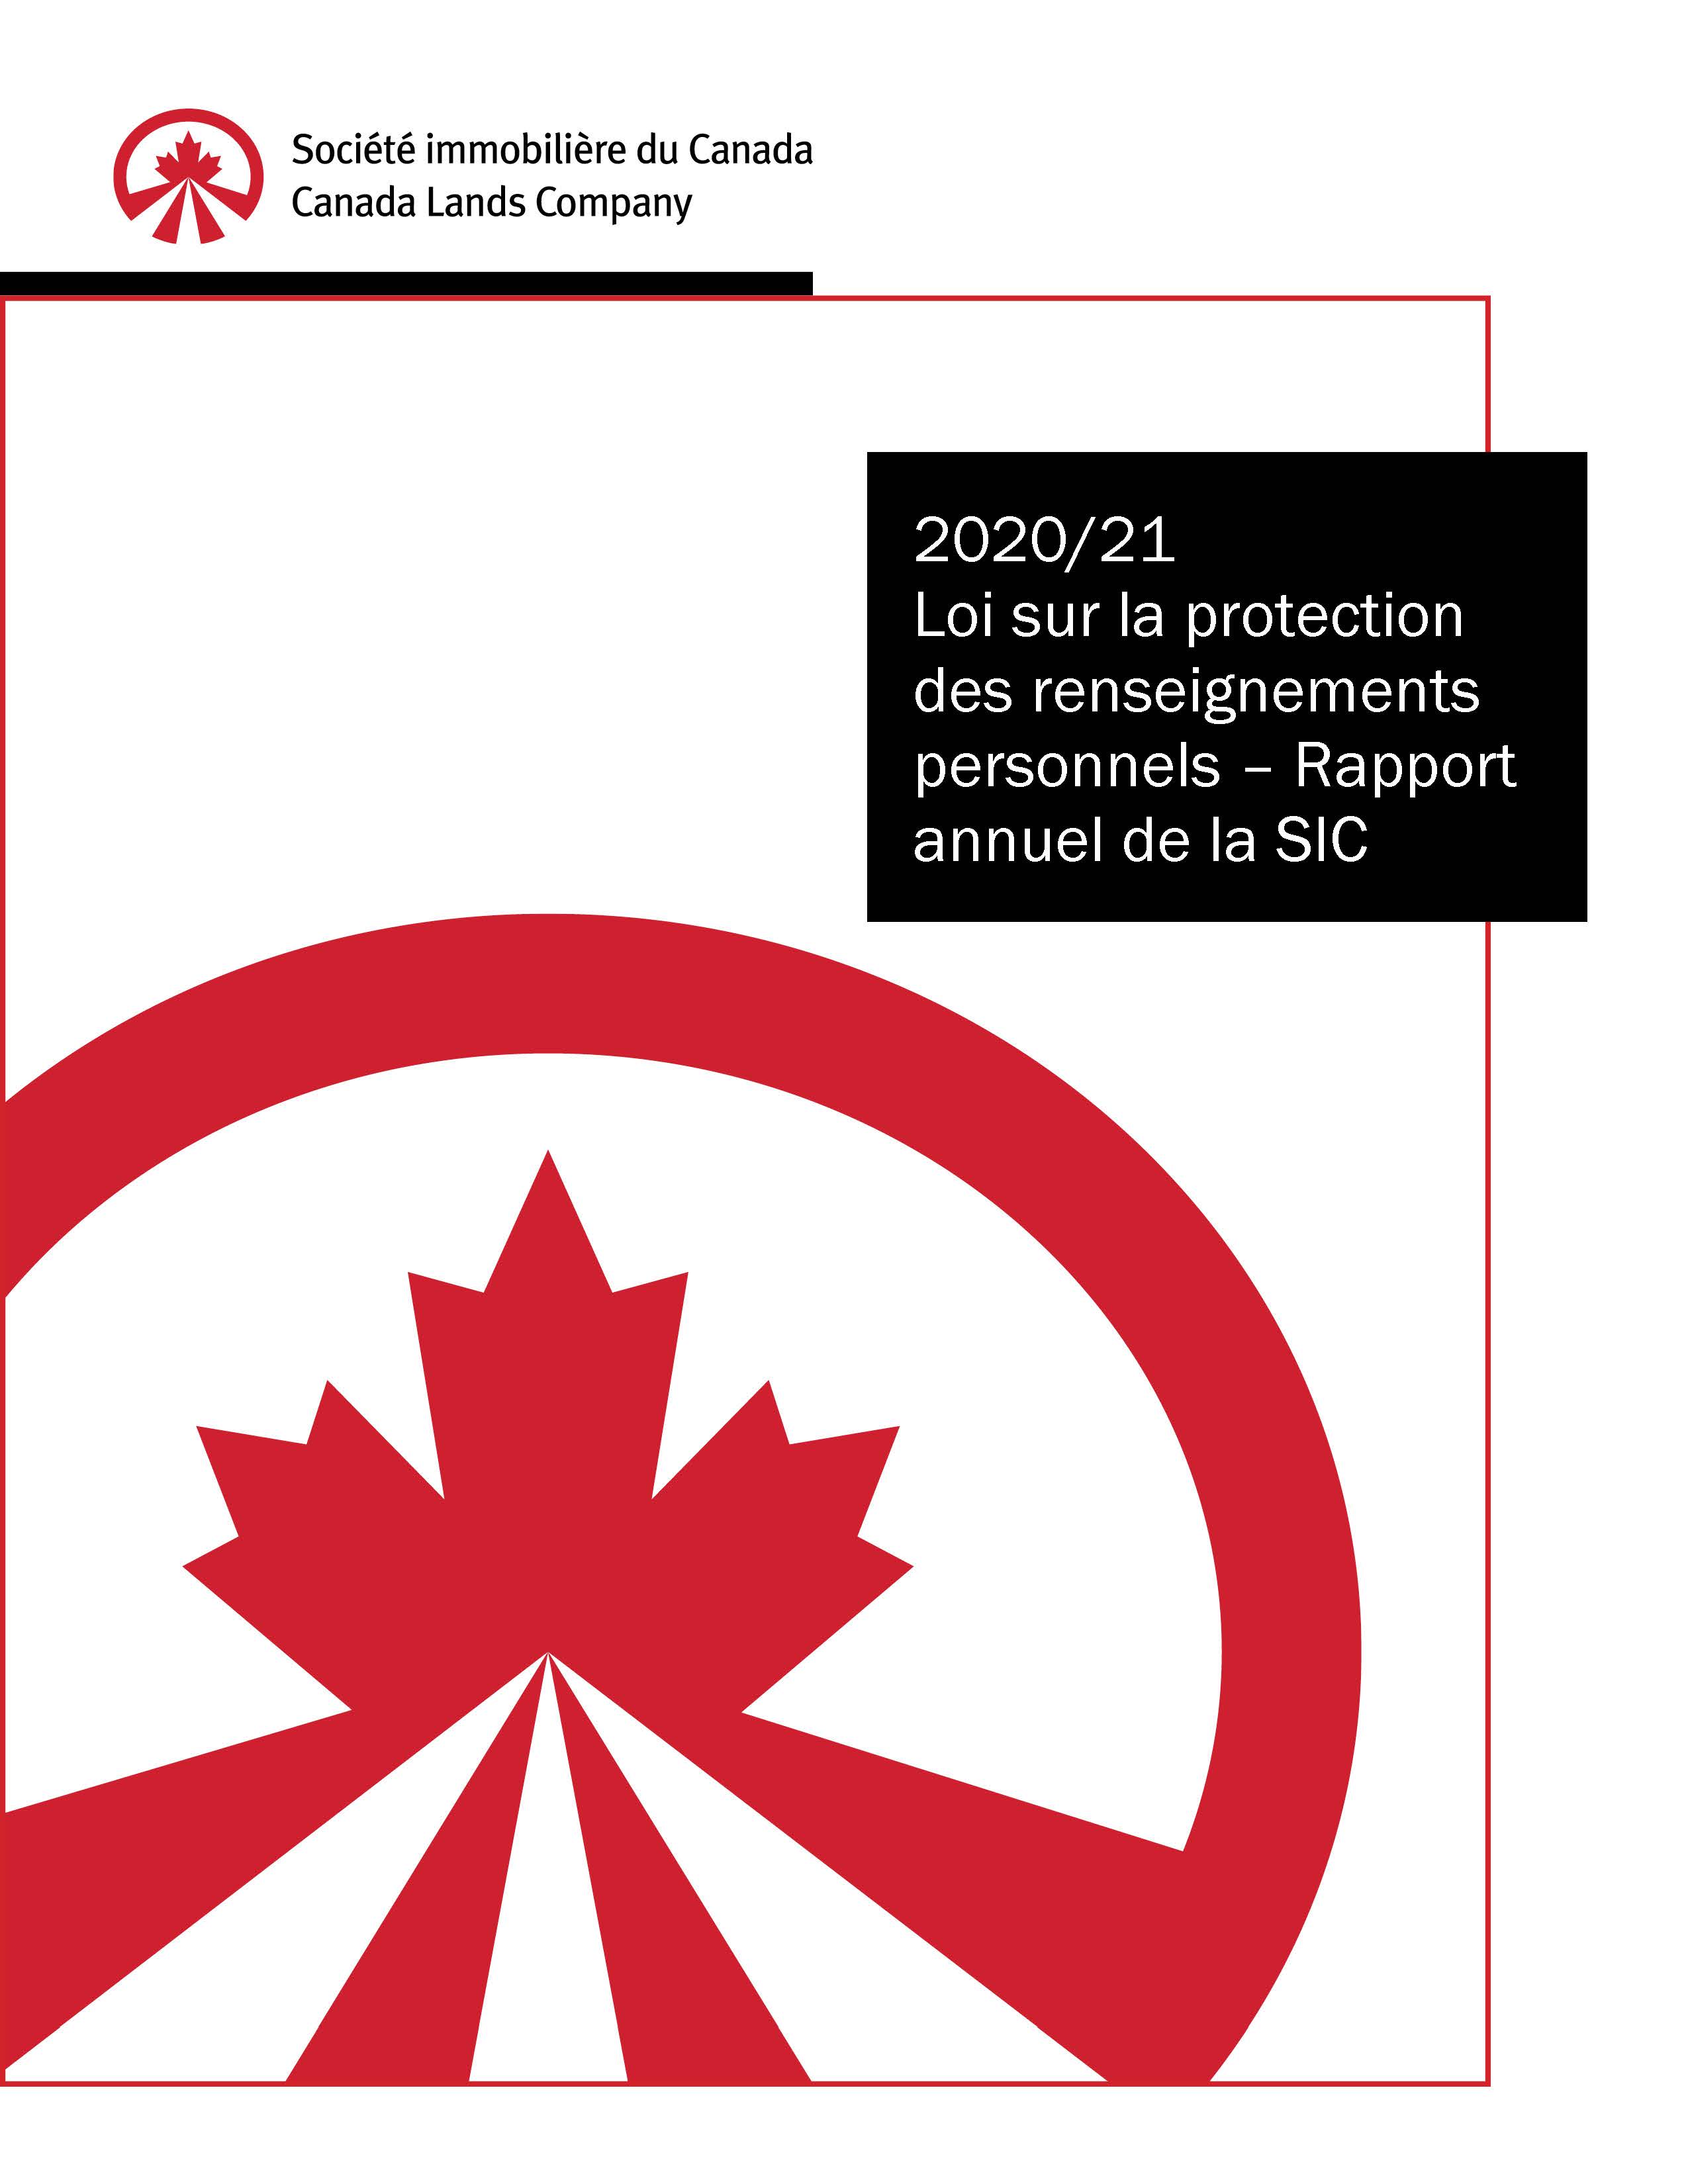 2020-21 Loi sur la protection des renseignements personnels - Rapport annuel de la SIC